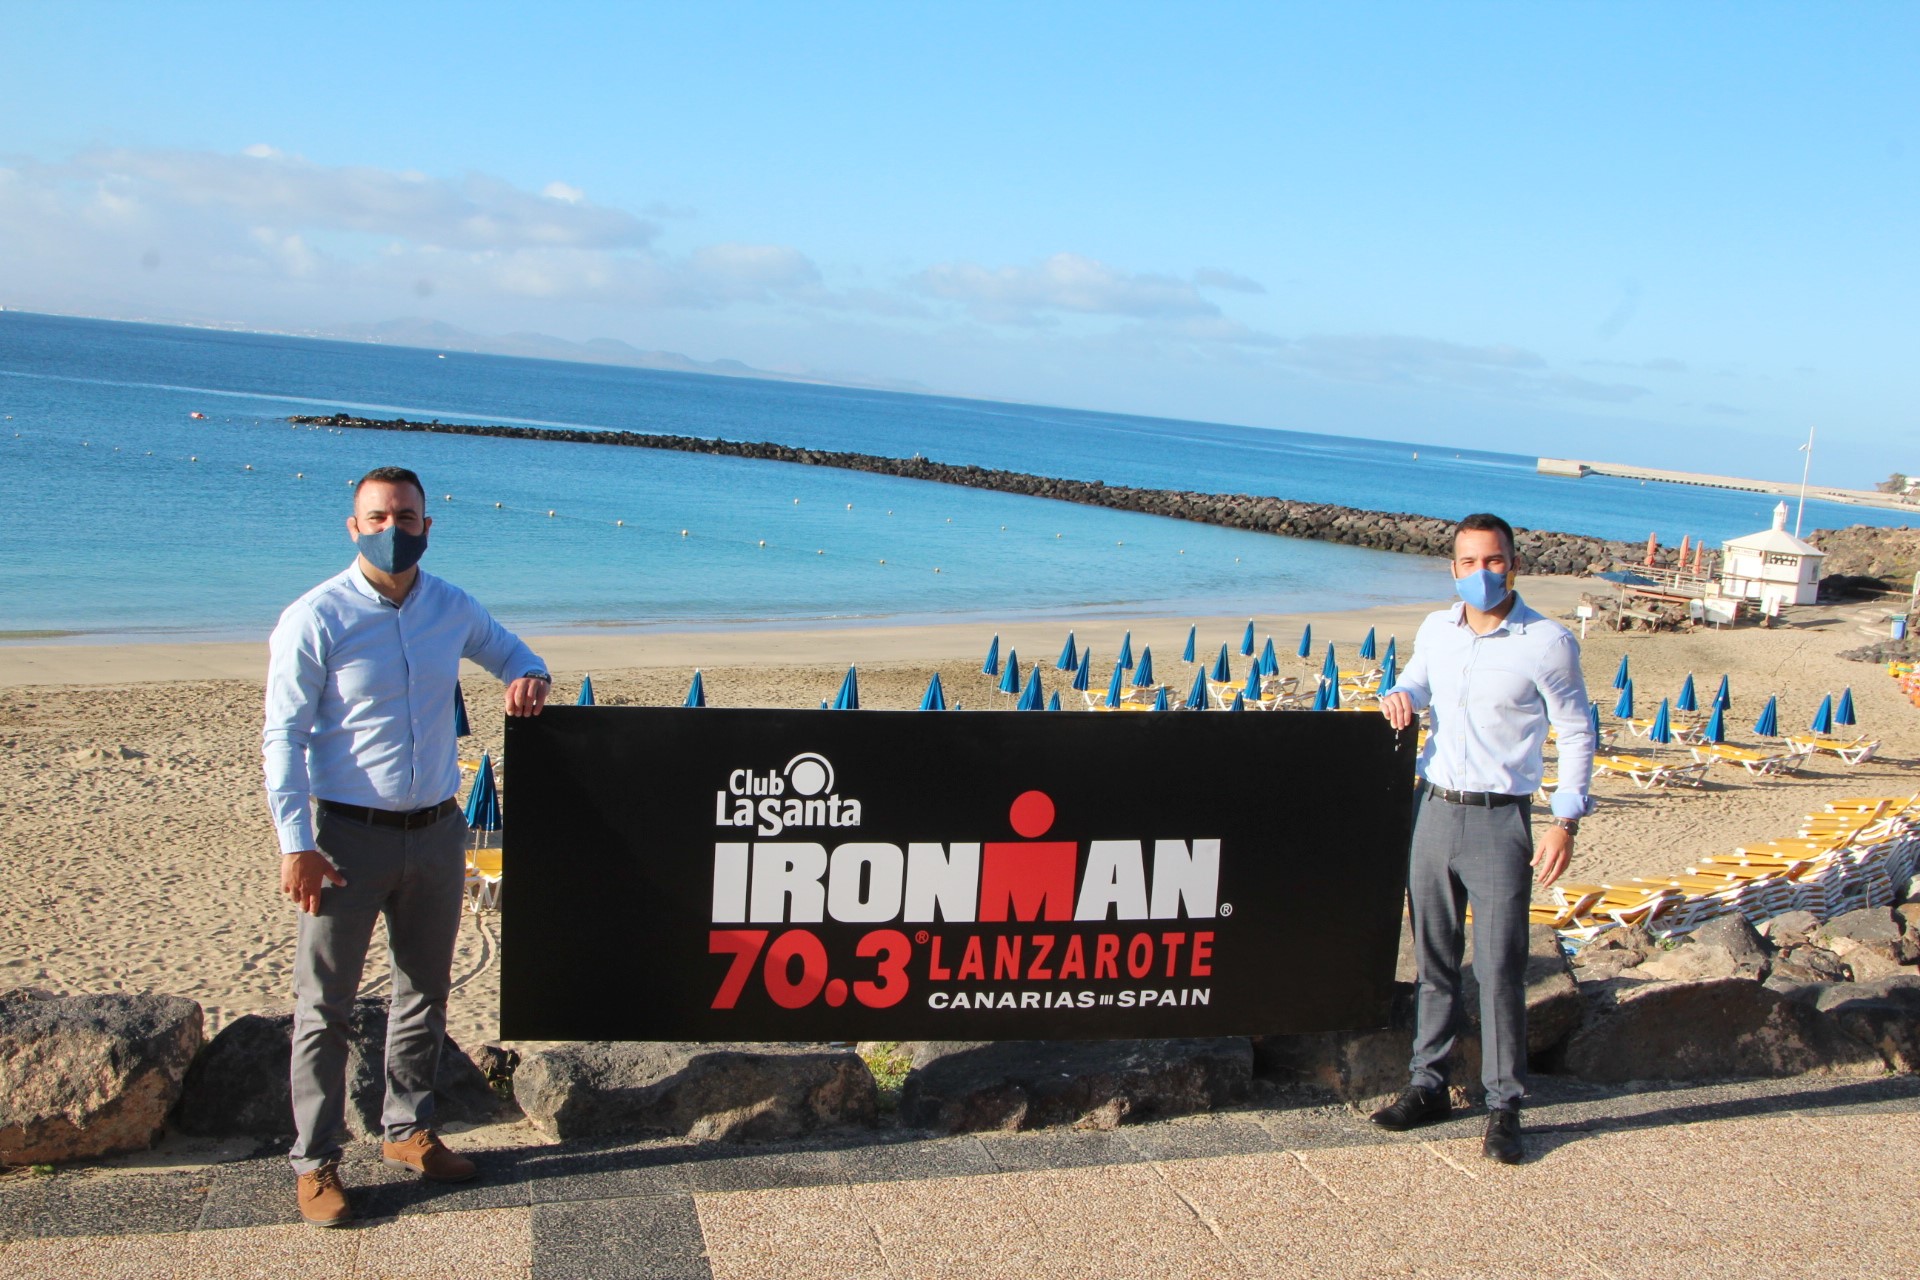 Ironman 70.3 Lanzarote / CanariasNoticias.es